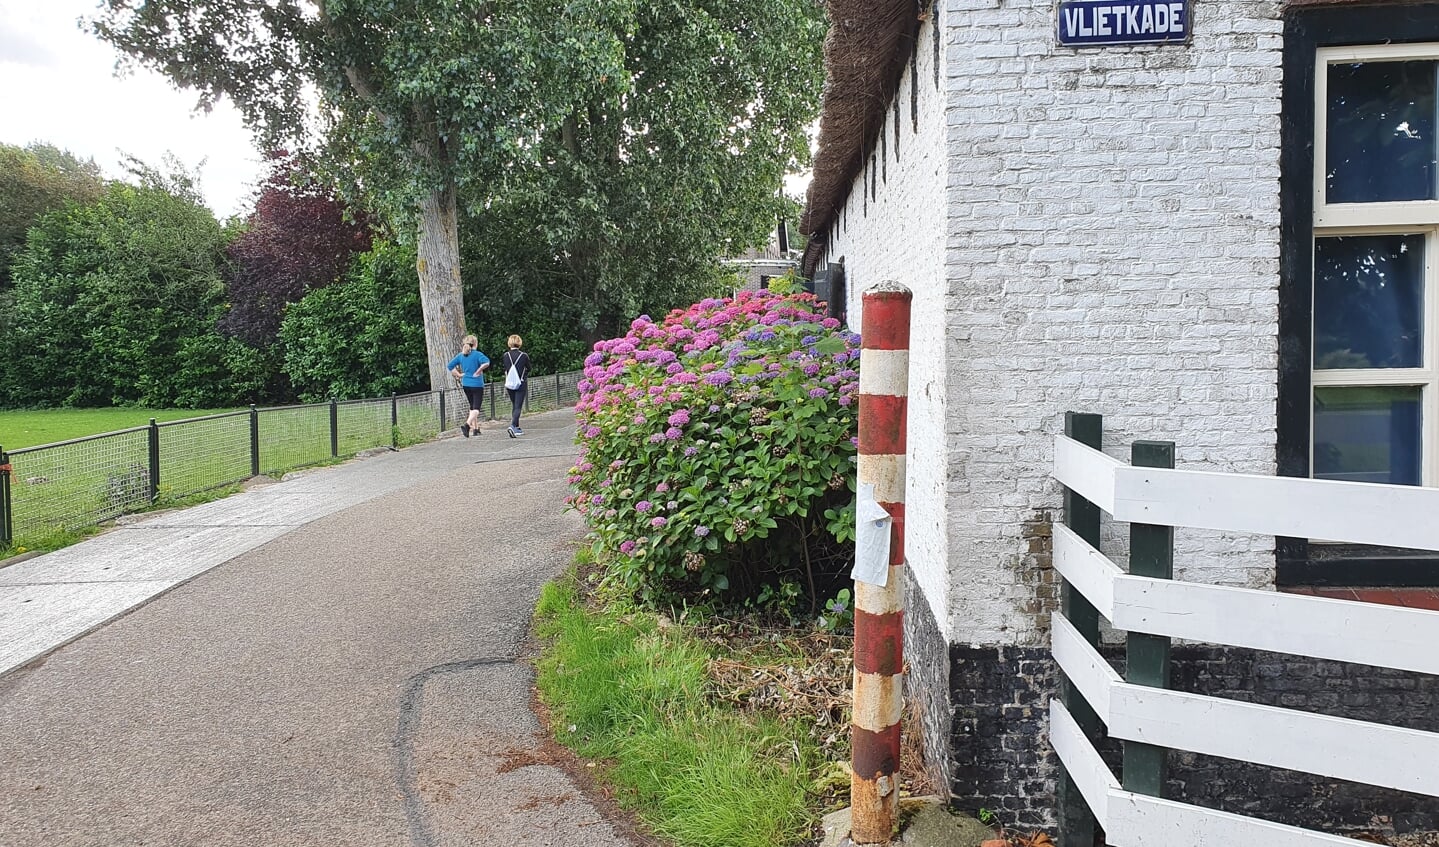 Het begin van onze vierdaagse: de Vlietkade in Oud Verlaat.